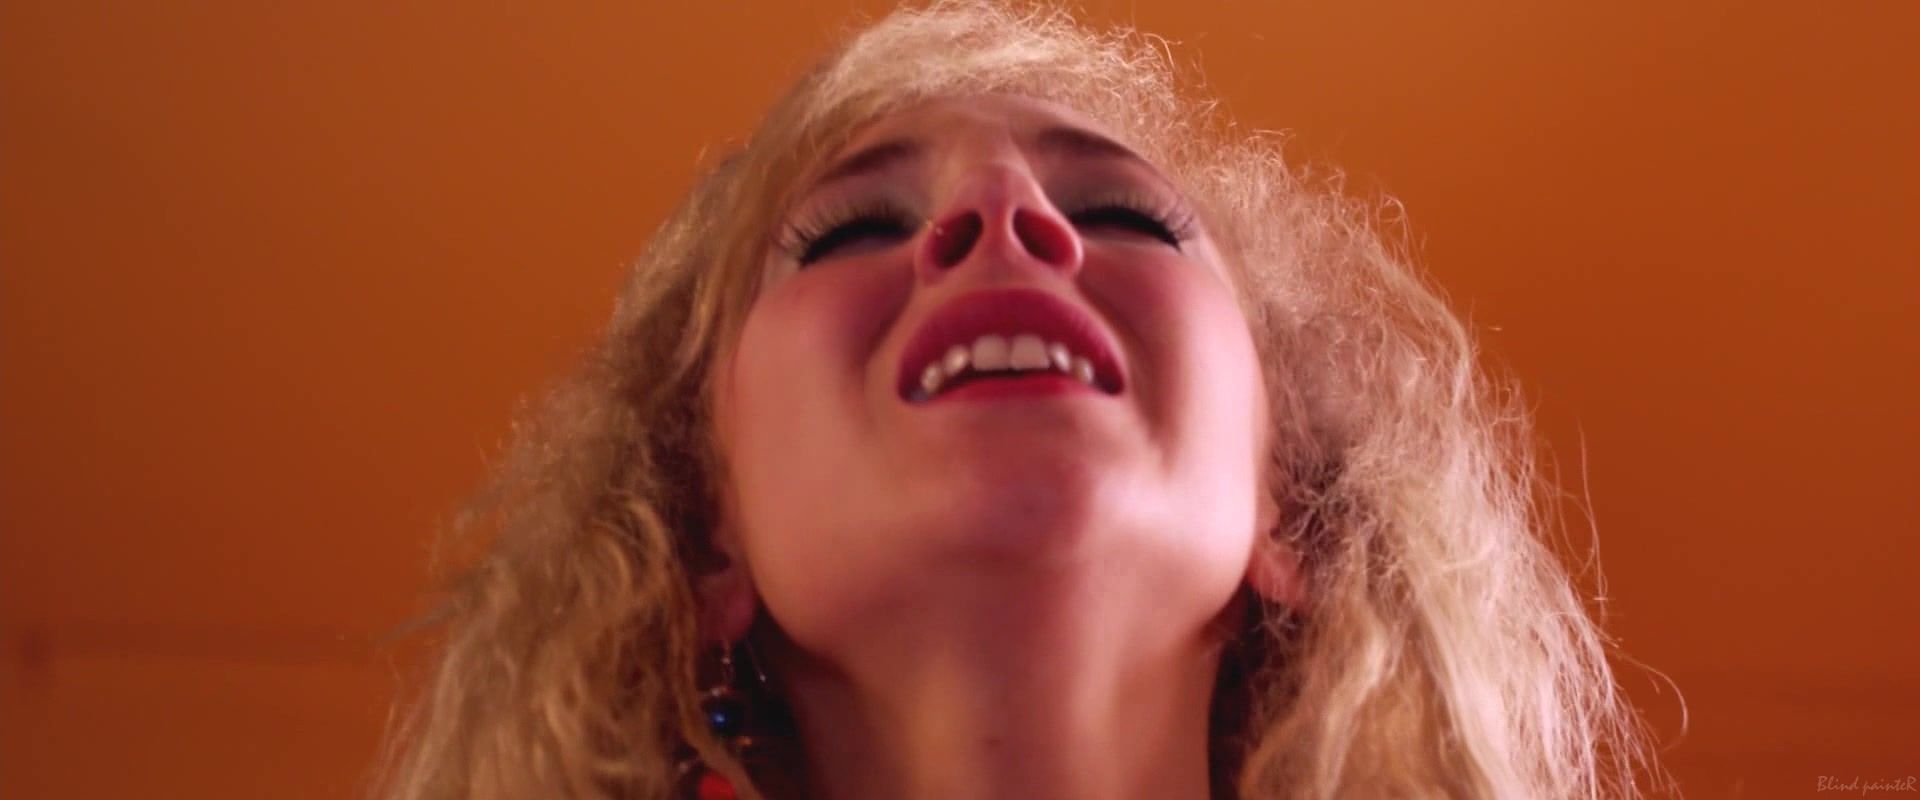 Delicia Sex video Juno Temple nude - Kaboom (2010) Clip